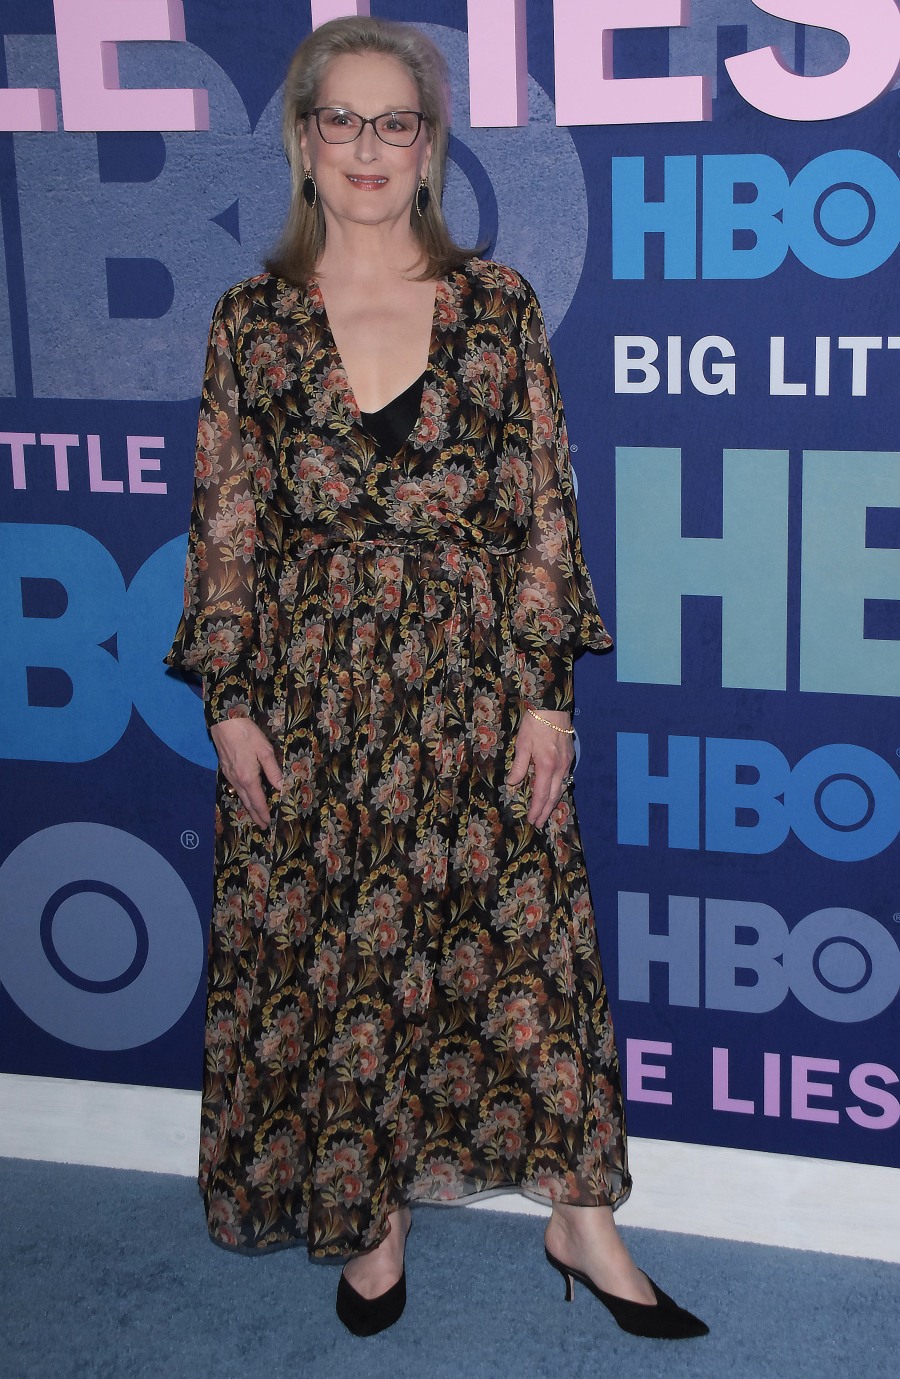 Big Little Lies Season 2 HBO Premiere